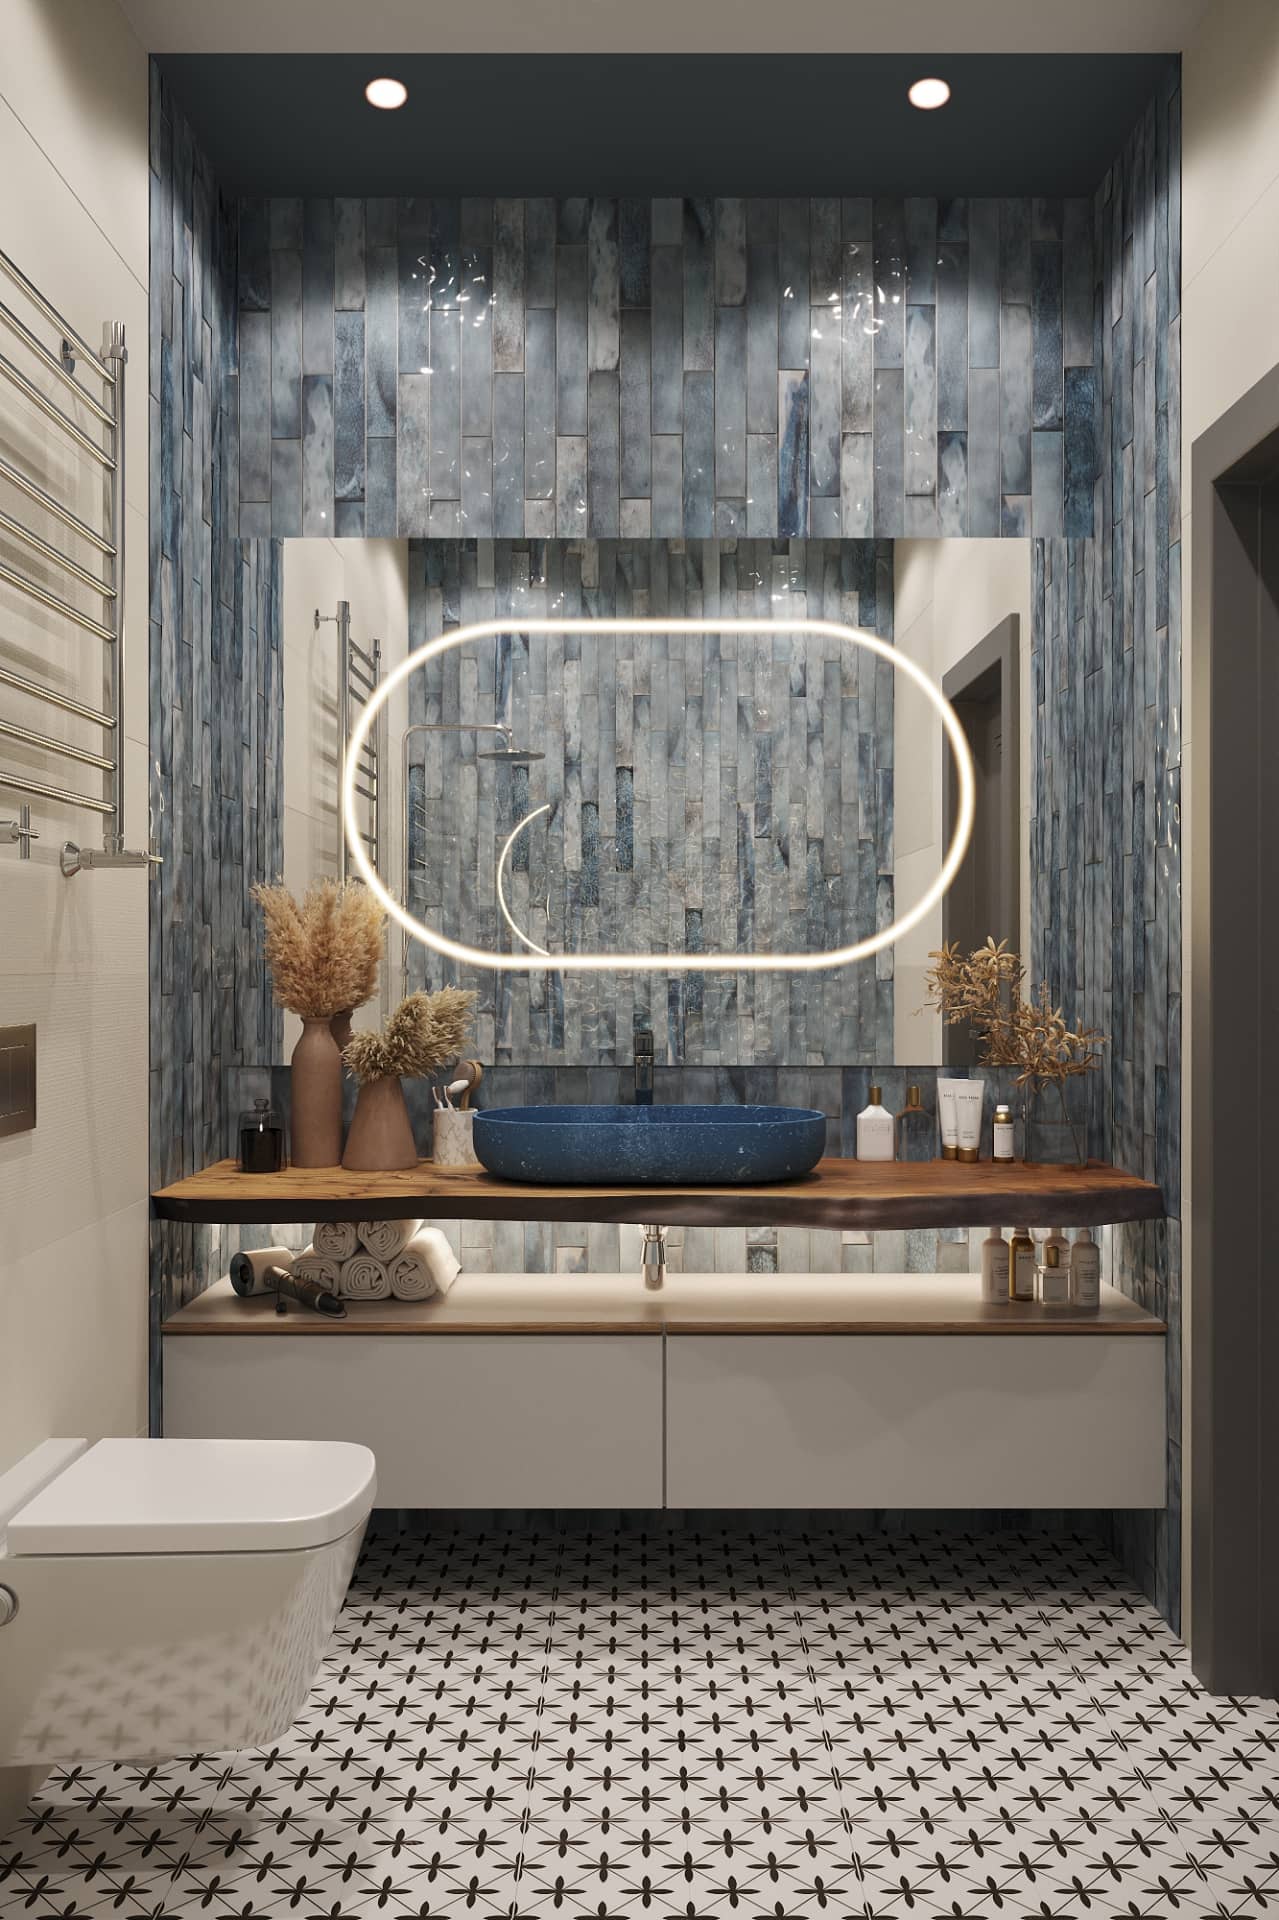 Дизайн интерьера маленькой ванной